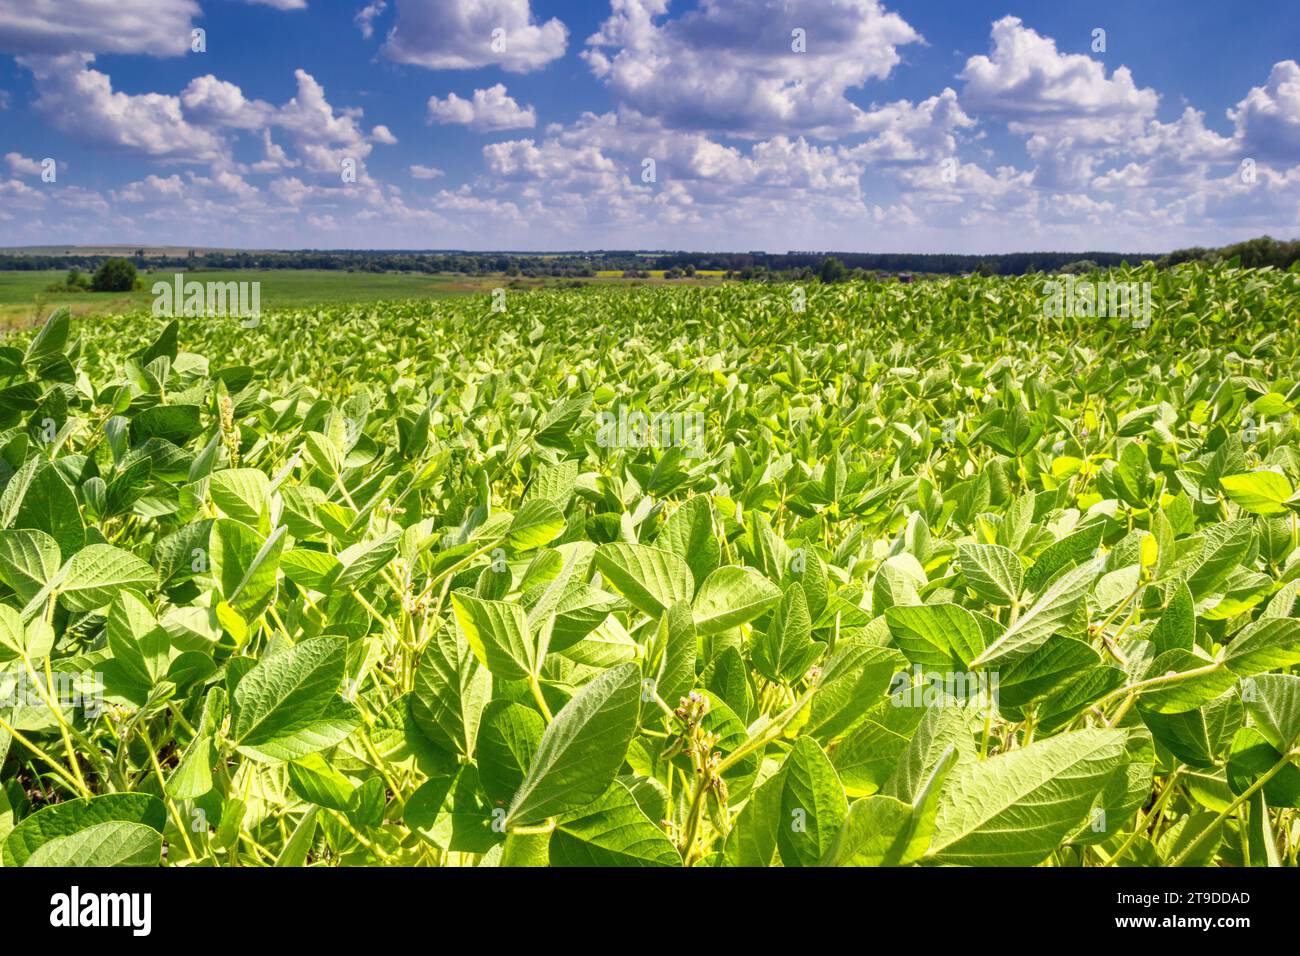 Paesaggio rurale - campo la soia (Glycine max) nei raggi del sole estivo sotto il cielo con le nuvole Foto Stock